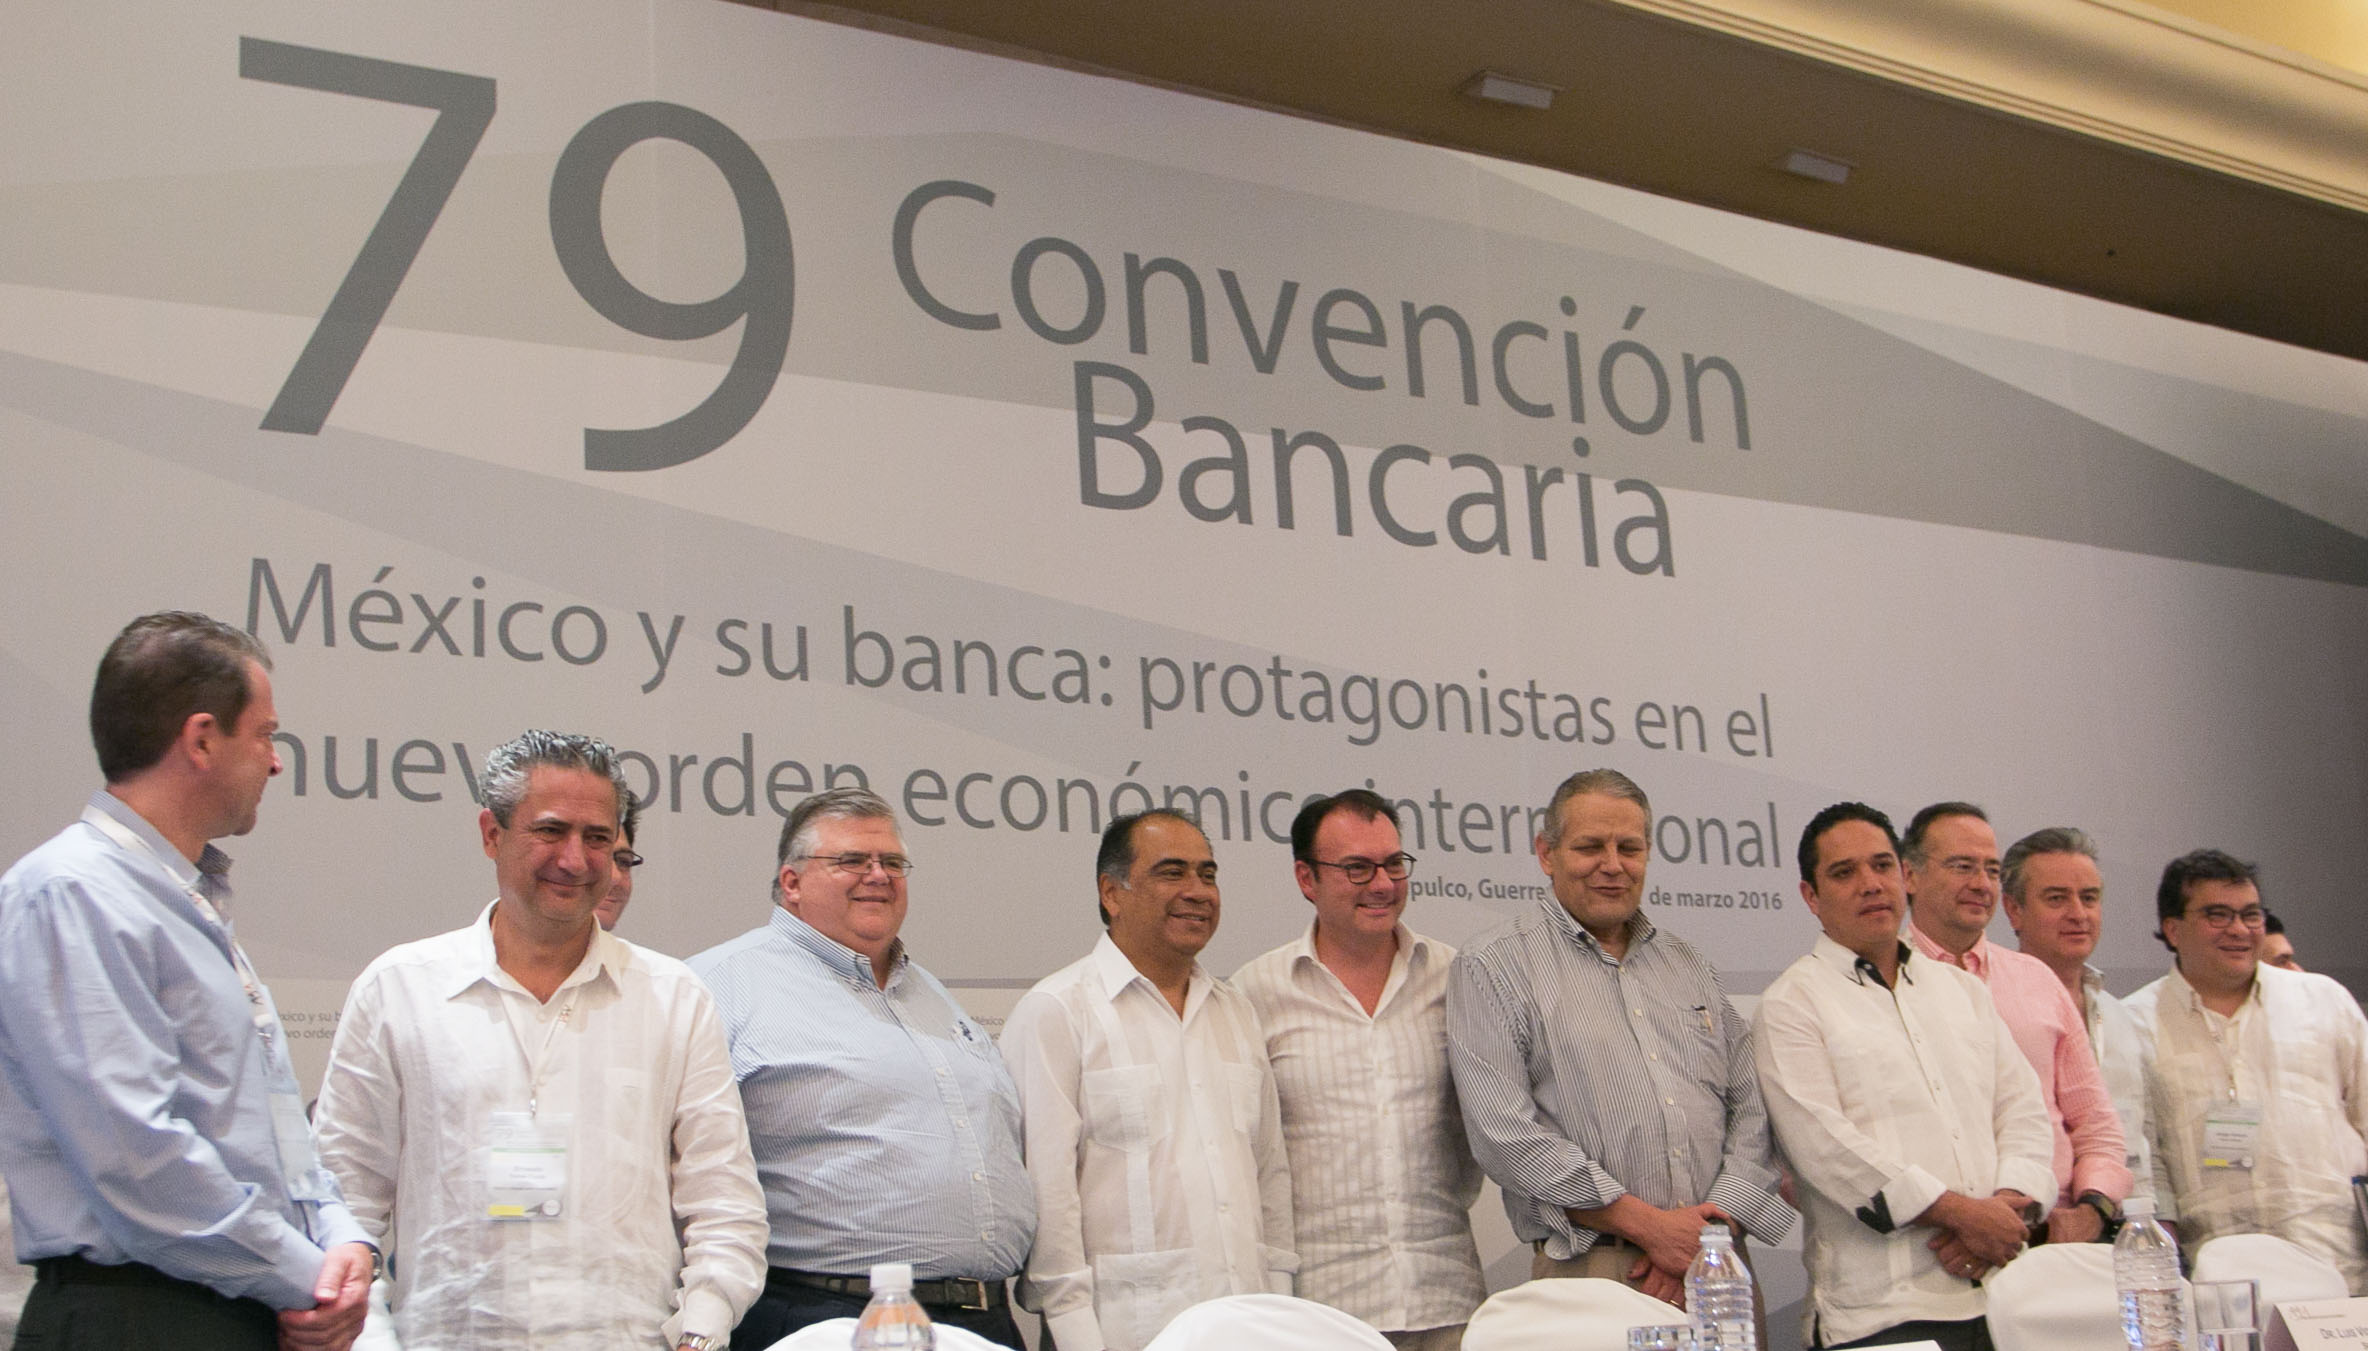 Clausura de la 79 Convención Bancaria
México y su banca: protagonistas en el nuevo orden económico internacional